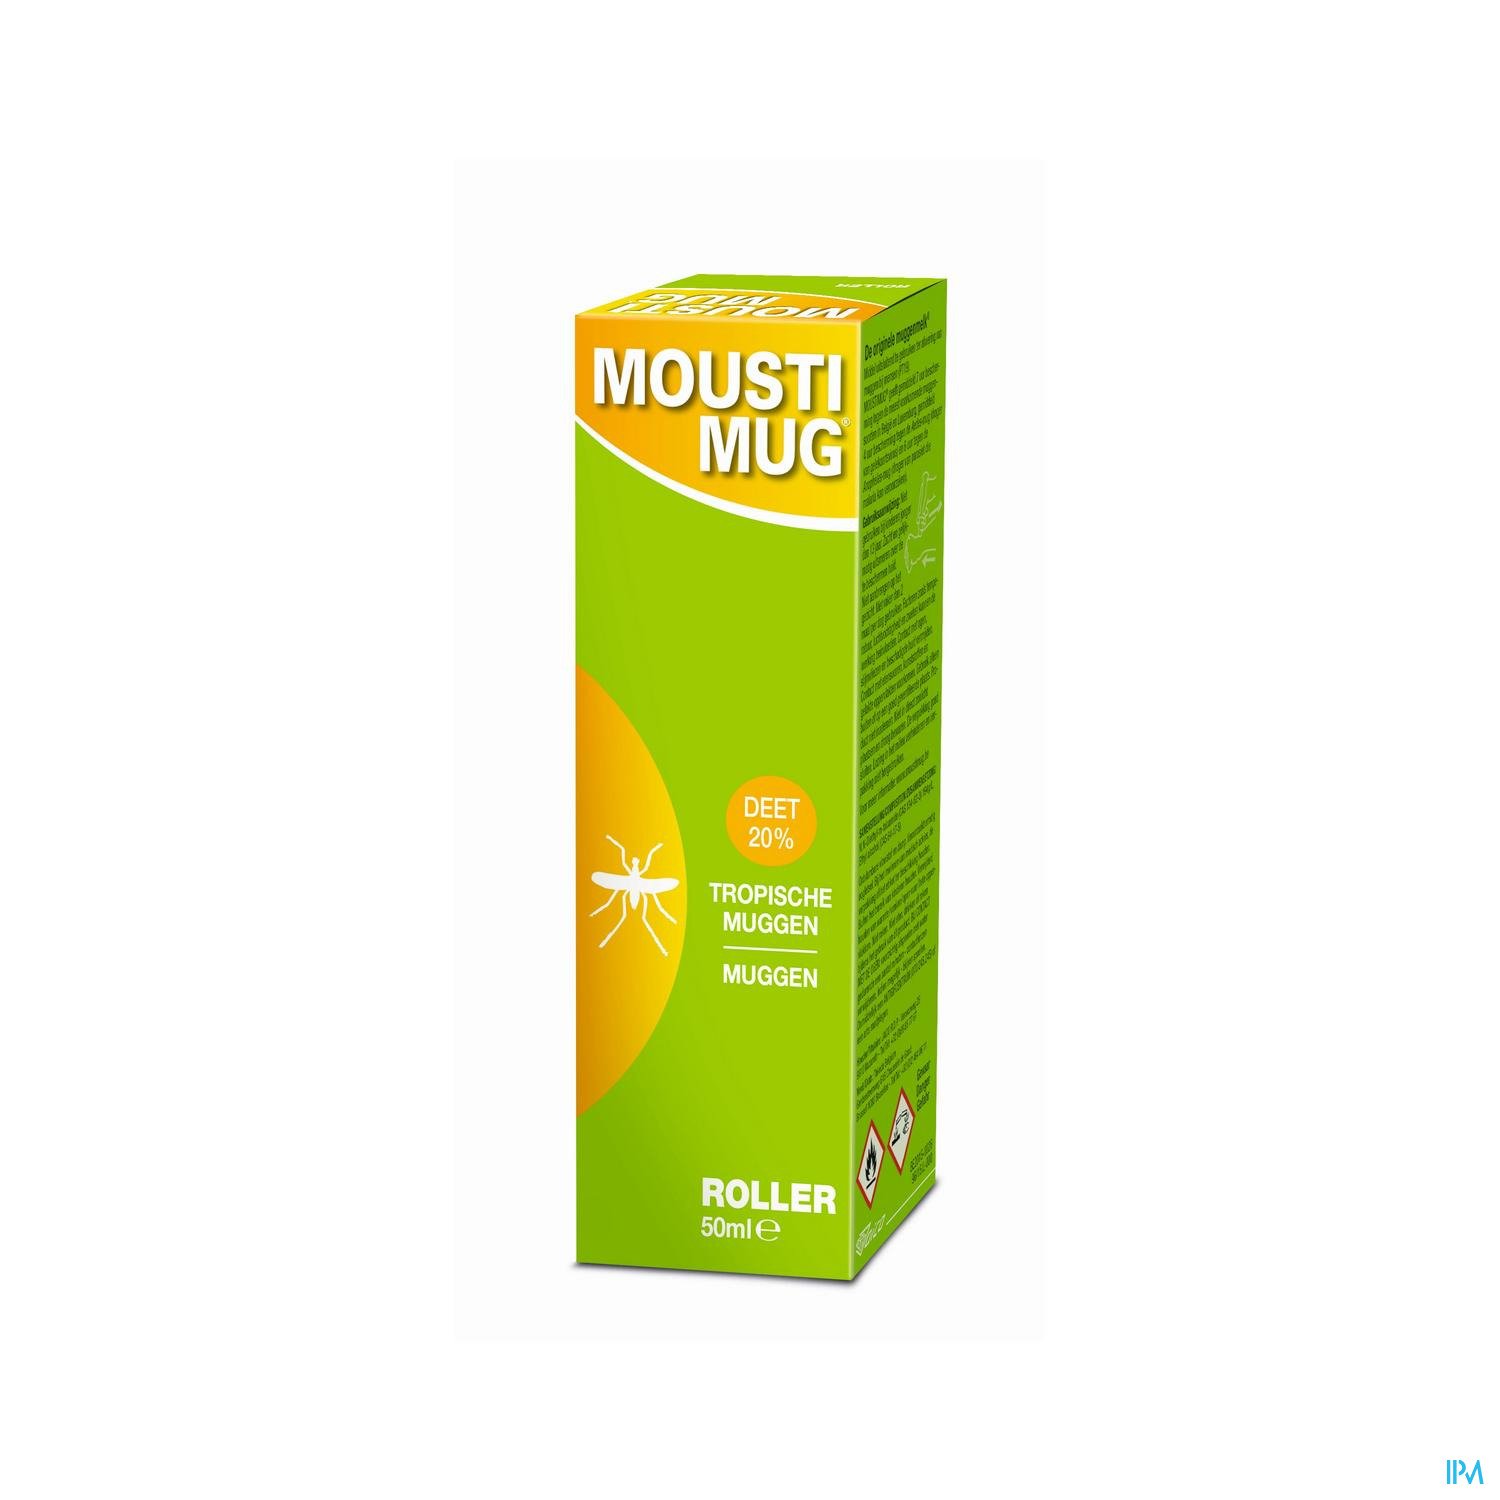 Image of Moustimug Original 20% DEET Roller 50ml 